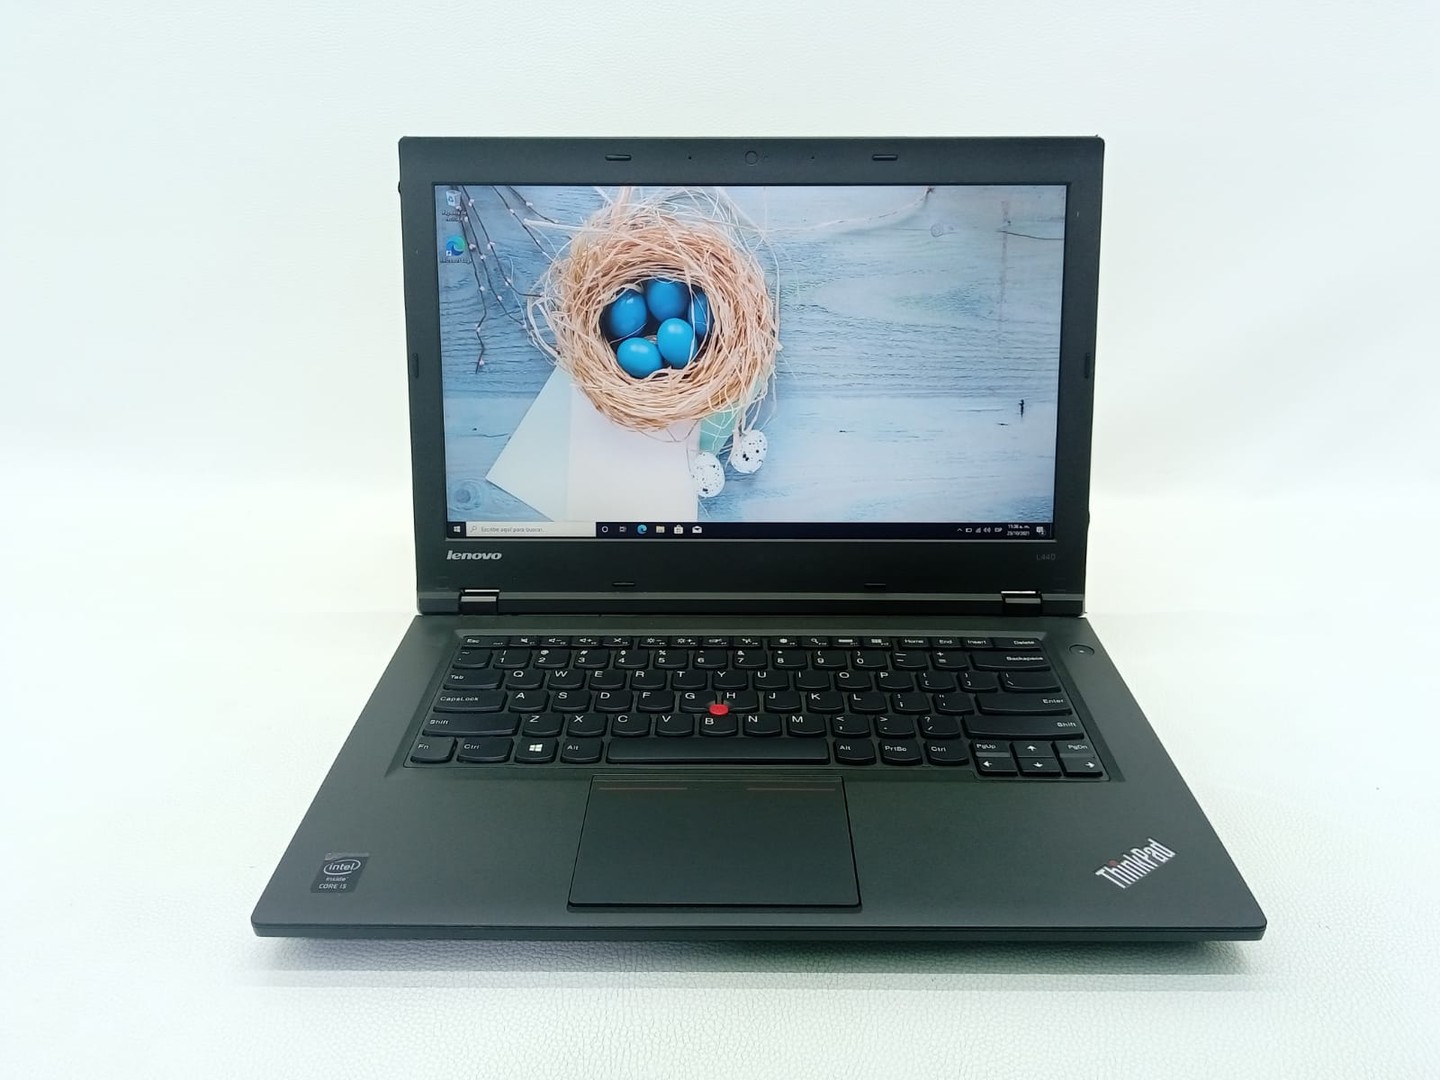 Laptop Lenovo ThinkPad L440 Core i5 320GB HDD, 8GB RAM (Incluye Mouse y Mochila)